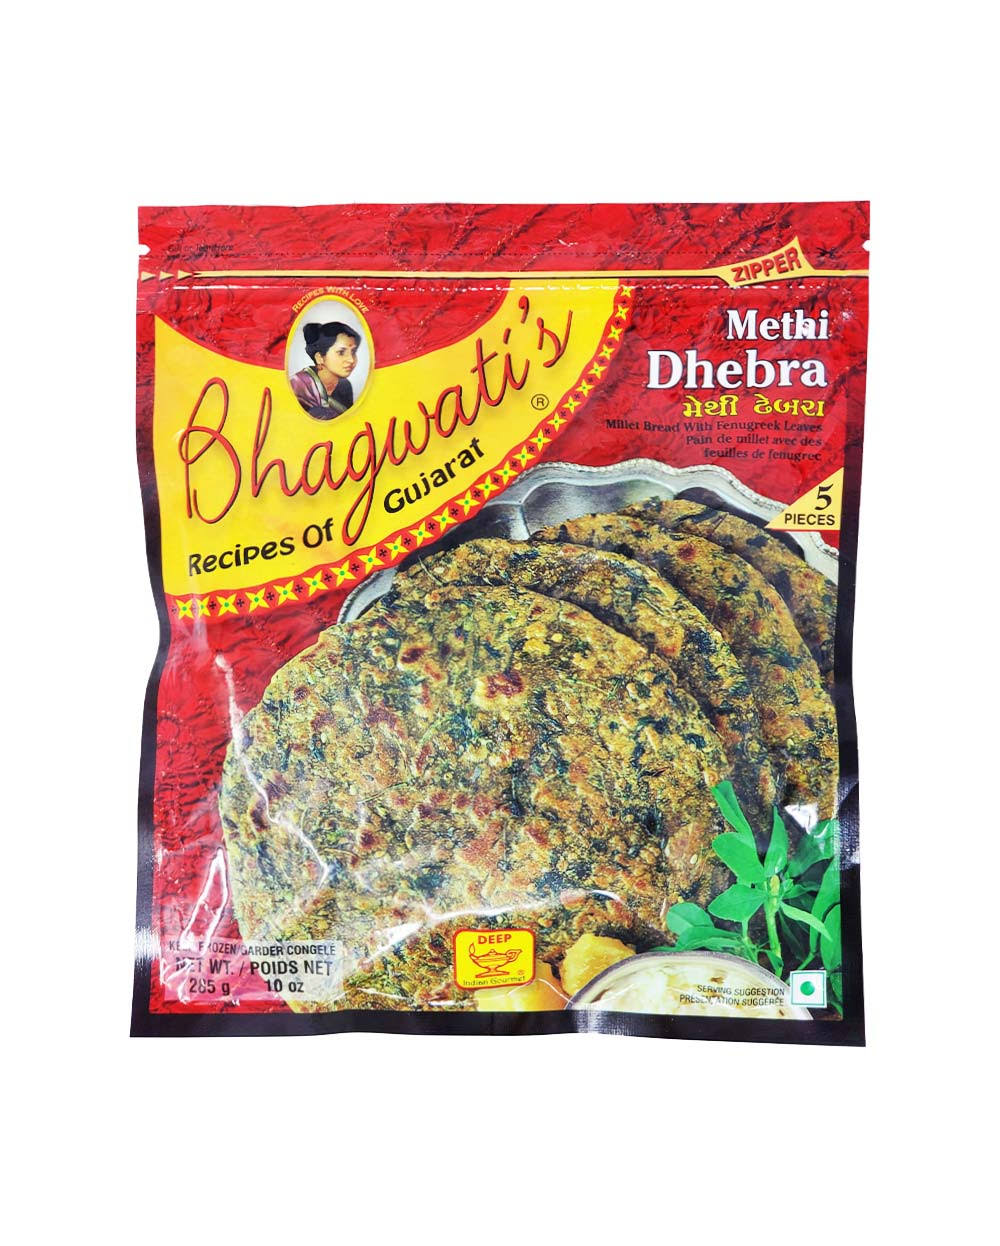 Deep Bhahwati's Methi Dhebra Millet Bread with Fenugreek Leaves - 5 ct - 10.0 oz